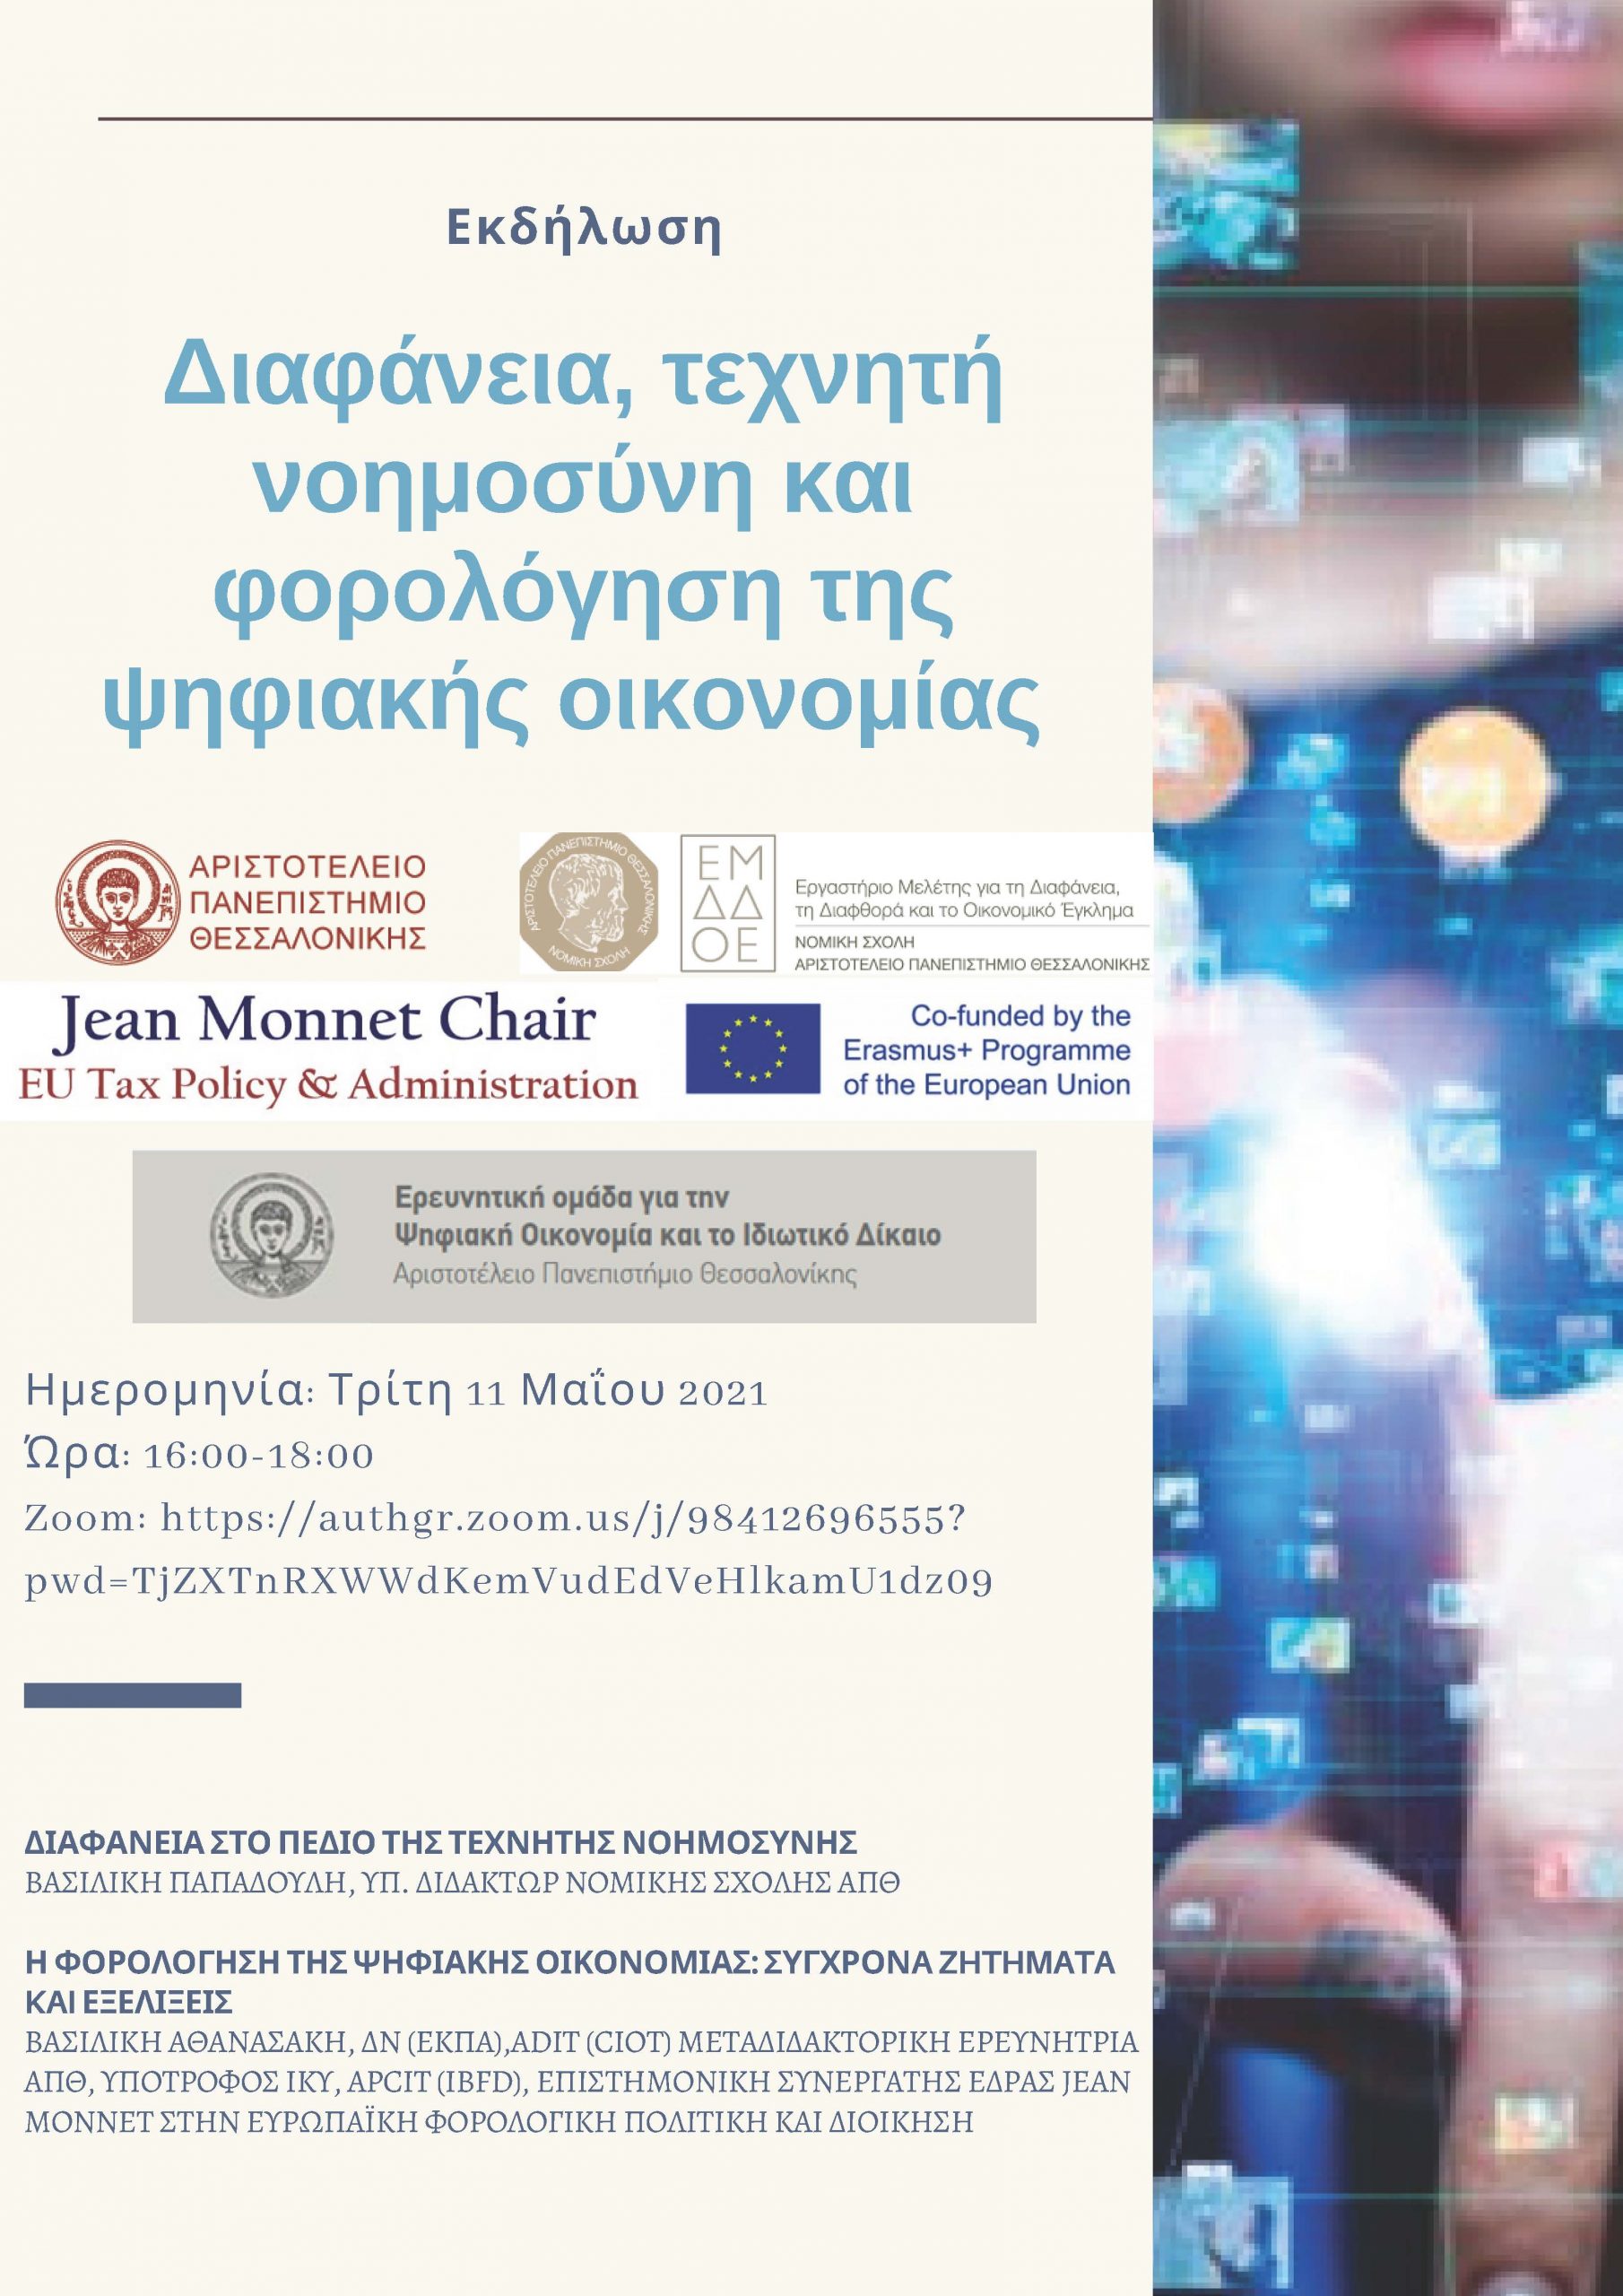 Εκδήλωση “Διαφάνεια, τεχνητή νοημοσύνη και φορολόγηση της ψηφιακής οικονομίας”, Τρίτη 11 Μαΐου 2021